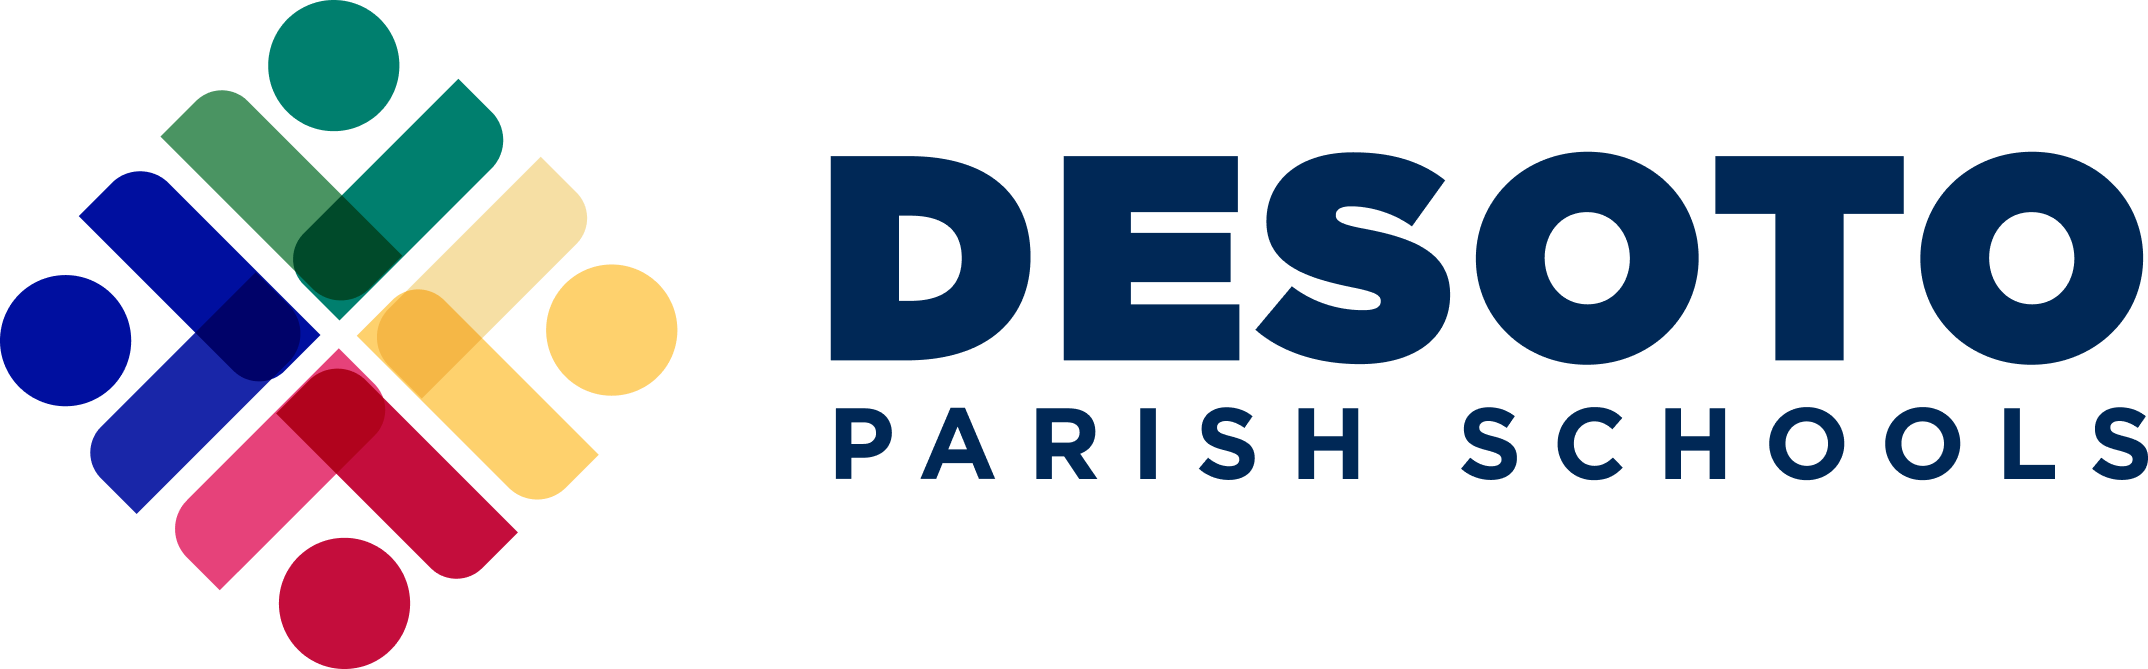 DeSoto Parish Schools